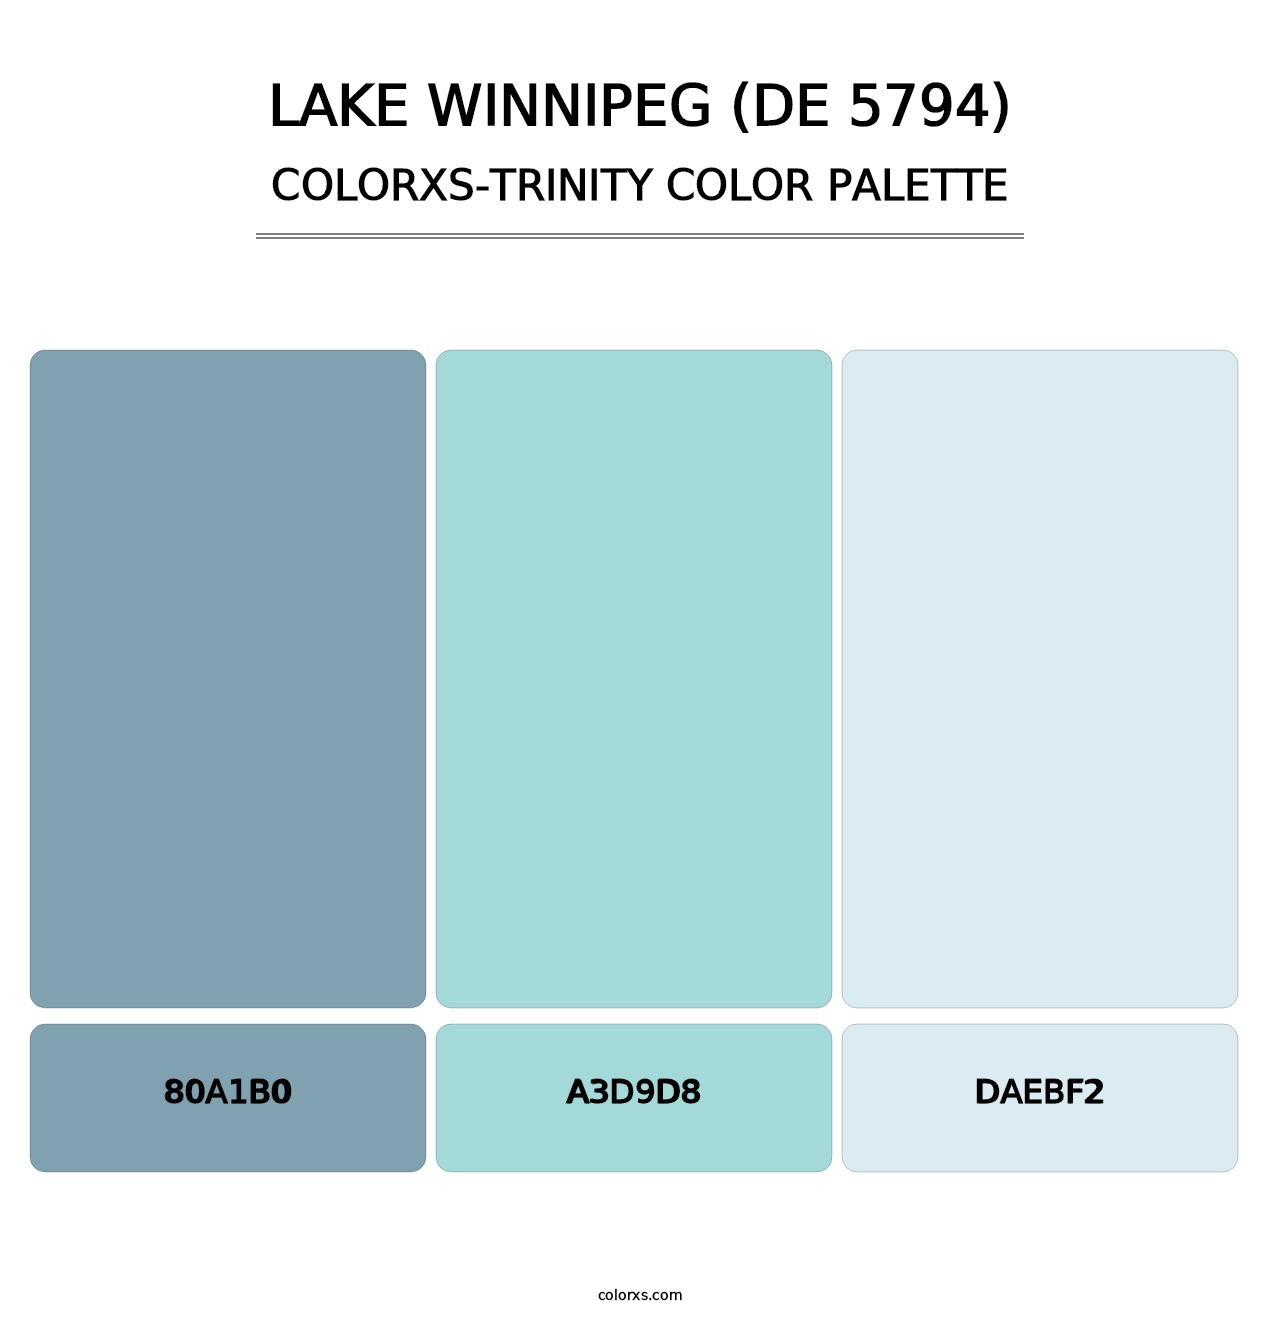 Lake Winnipeg (DE 5794) - Colorxs Trinity Palette